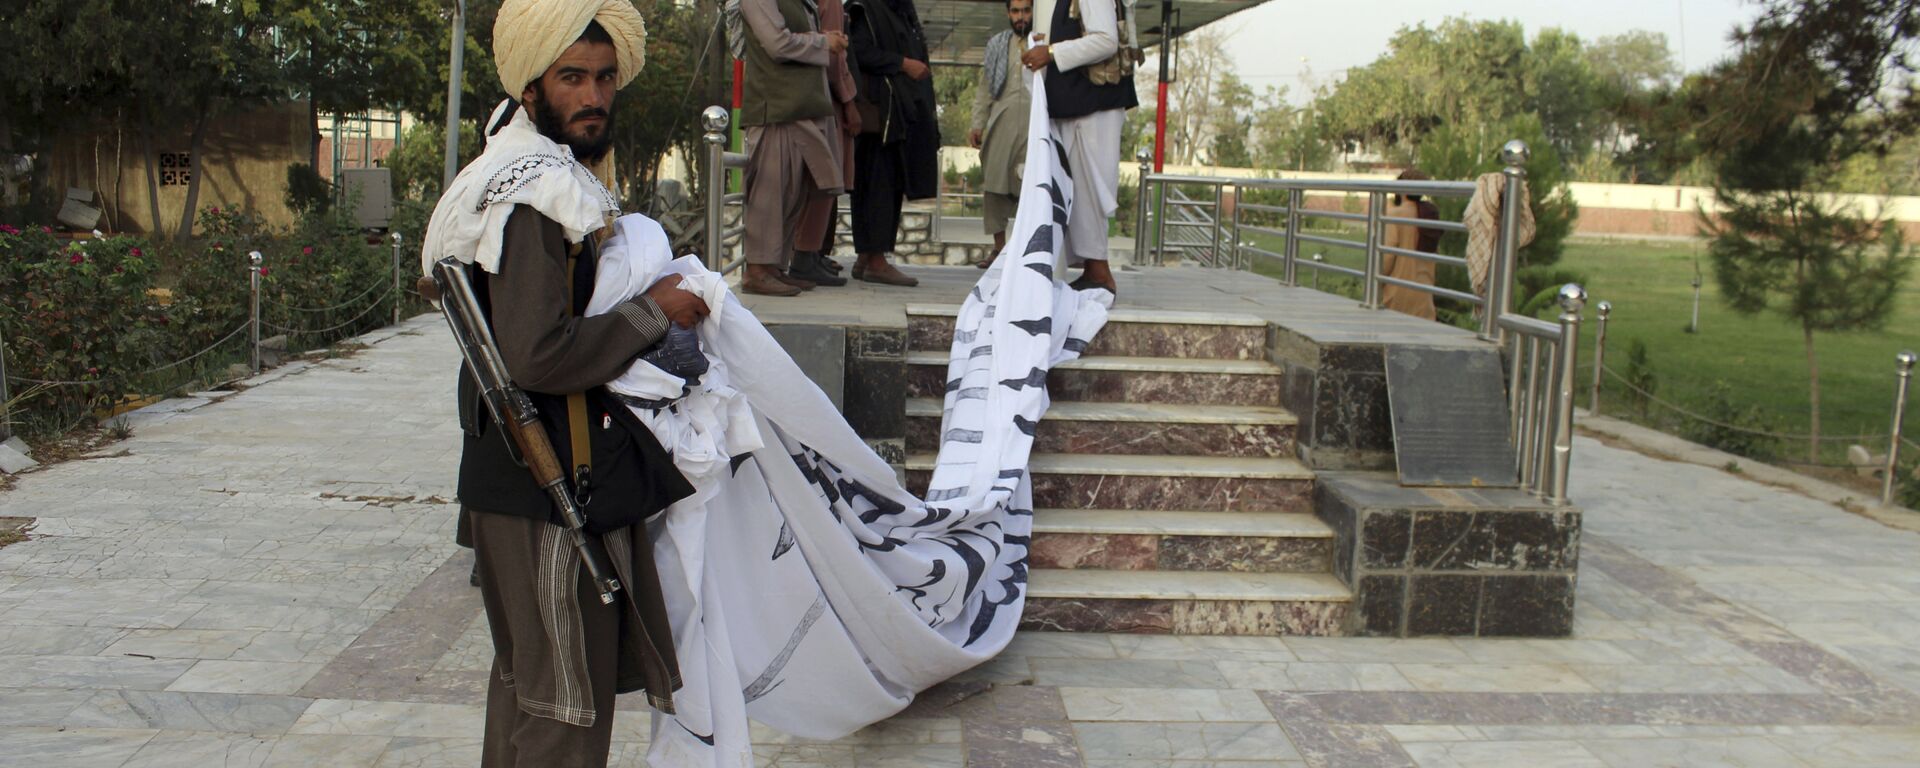 Боевики Талибан* поднимают свой флаг в городе Газни  - Sputnik Узбекистан, 1920, 18.08.2021